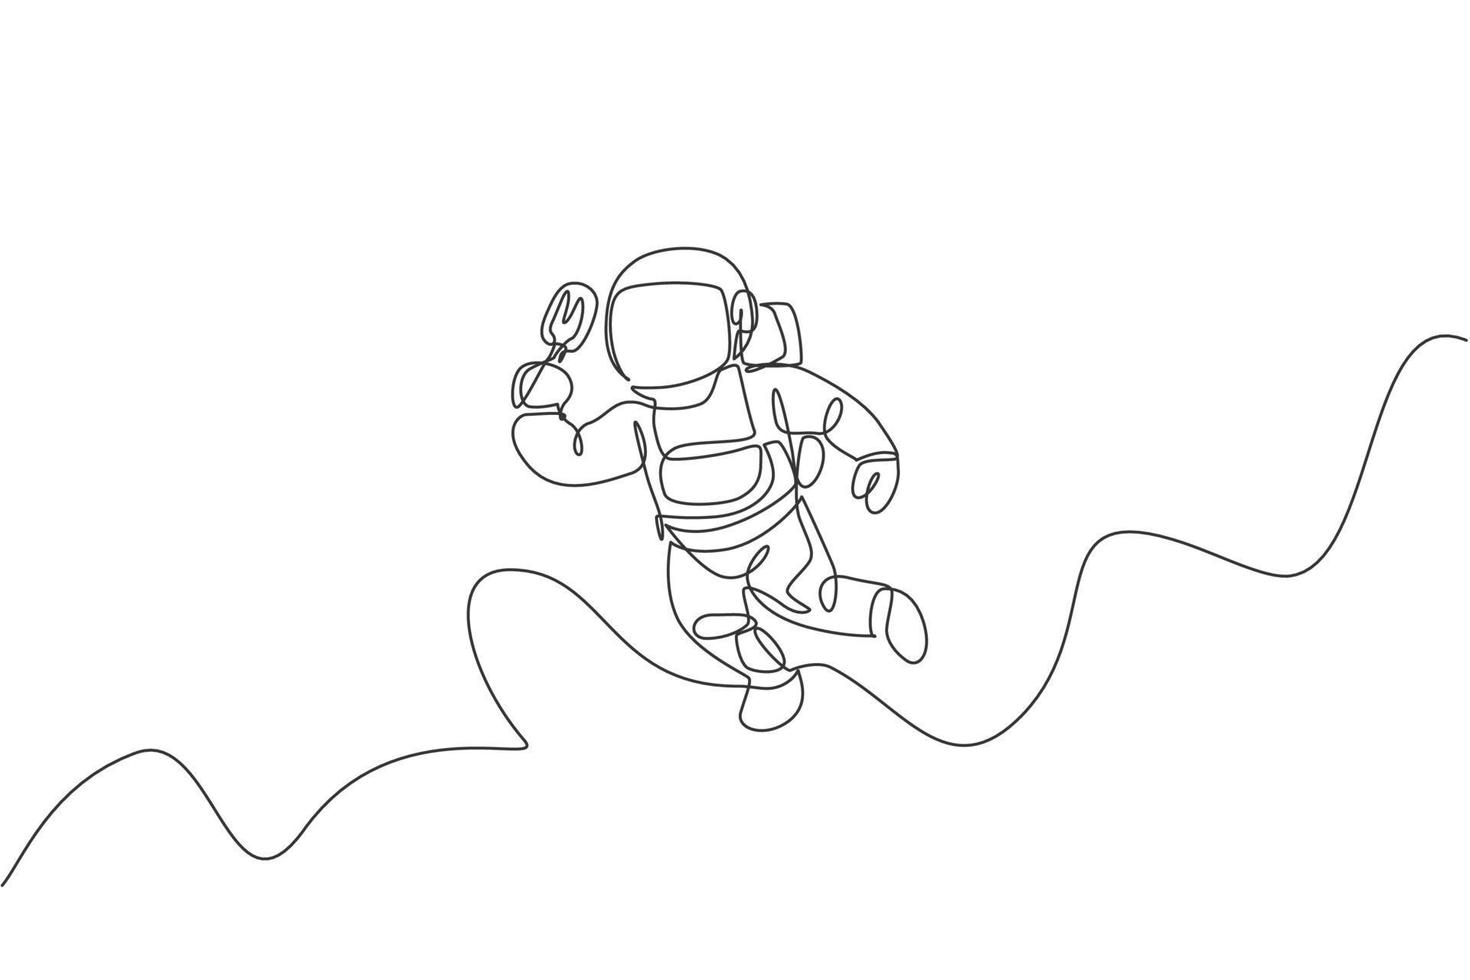 enkele doorlopende lijntekening van ruimtevaarder die ontspant terwijl hij ijslolly-ijs eet in de nevelmelkweg. fantasiefictie van het concept van het leven in de ruimte. trendy één lijn tekenen ontwerp vectorillustratie vector